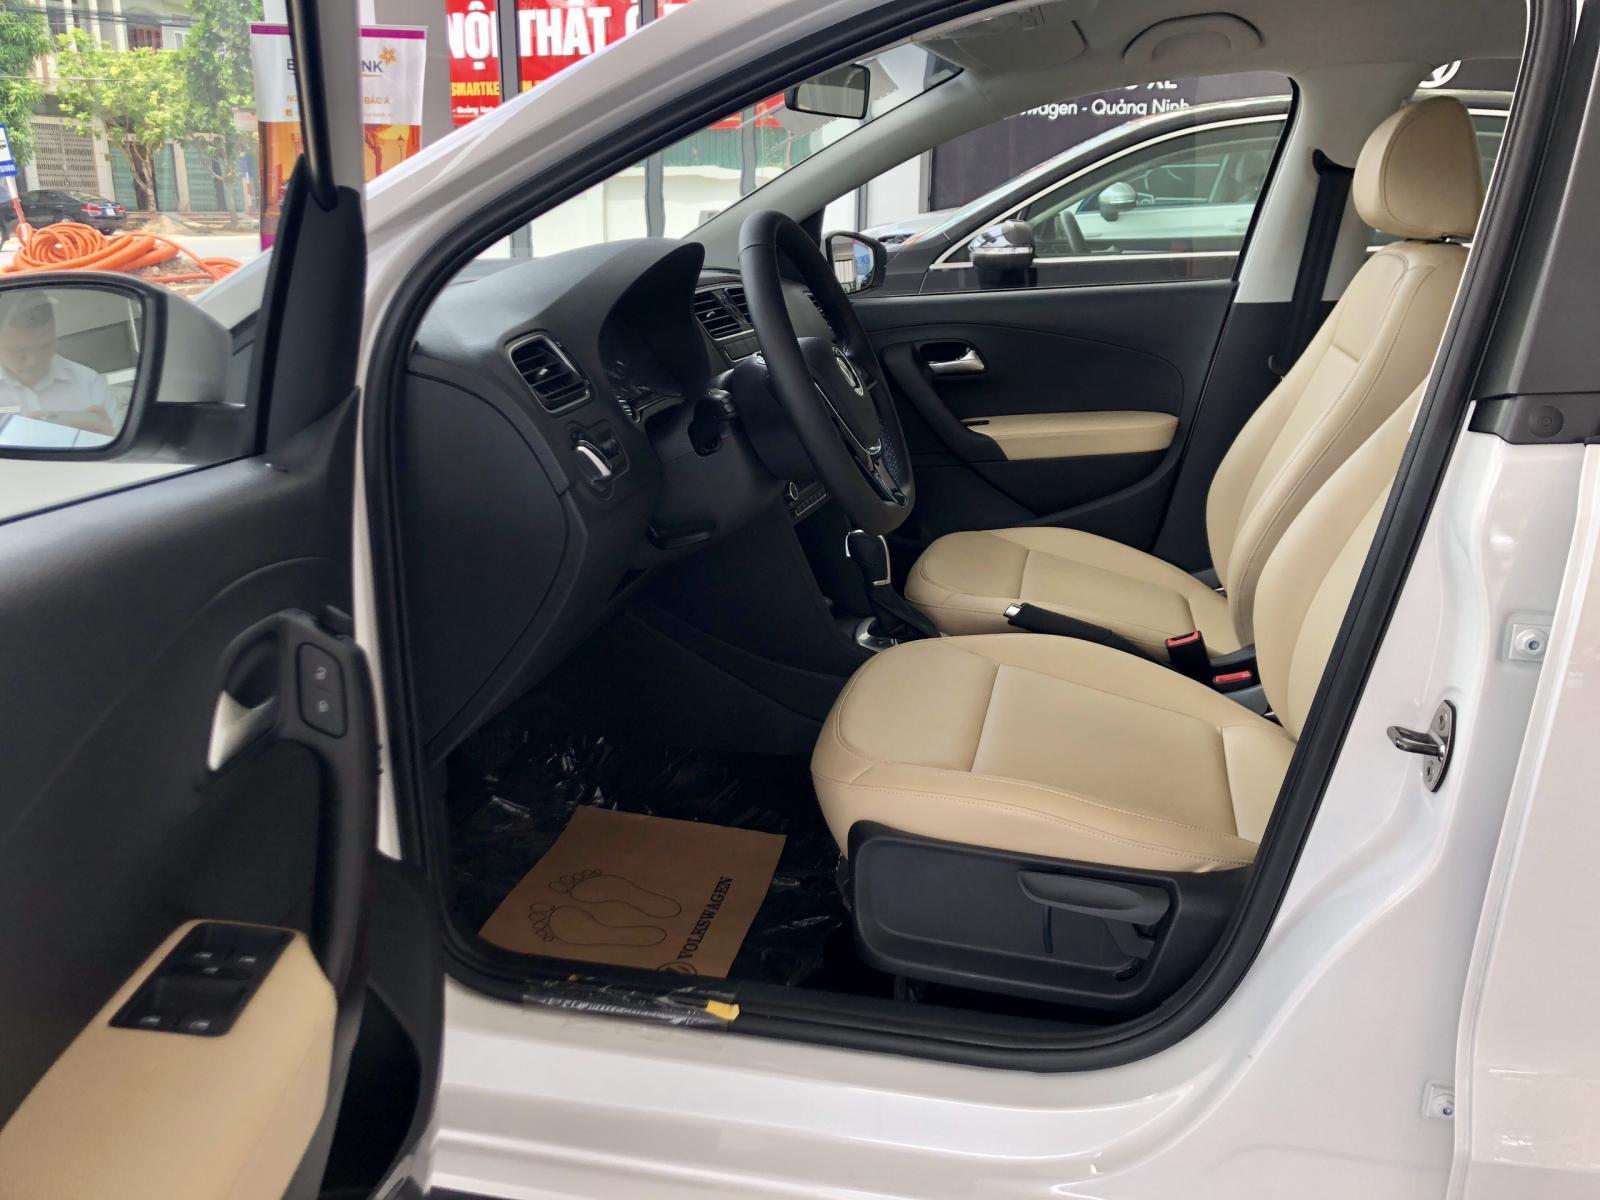 Volkswagen Polo Hatchback 2020, màu trắng tặng quà hấp dẫn khi mua xe-6